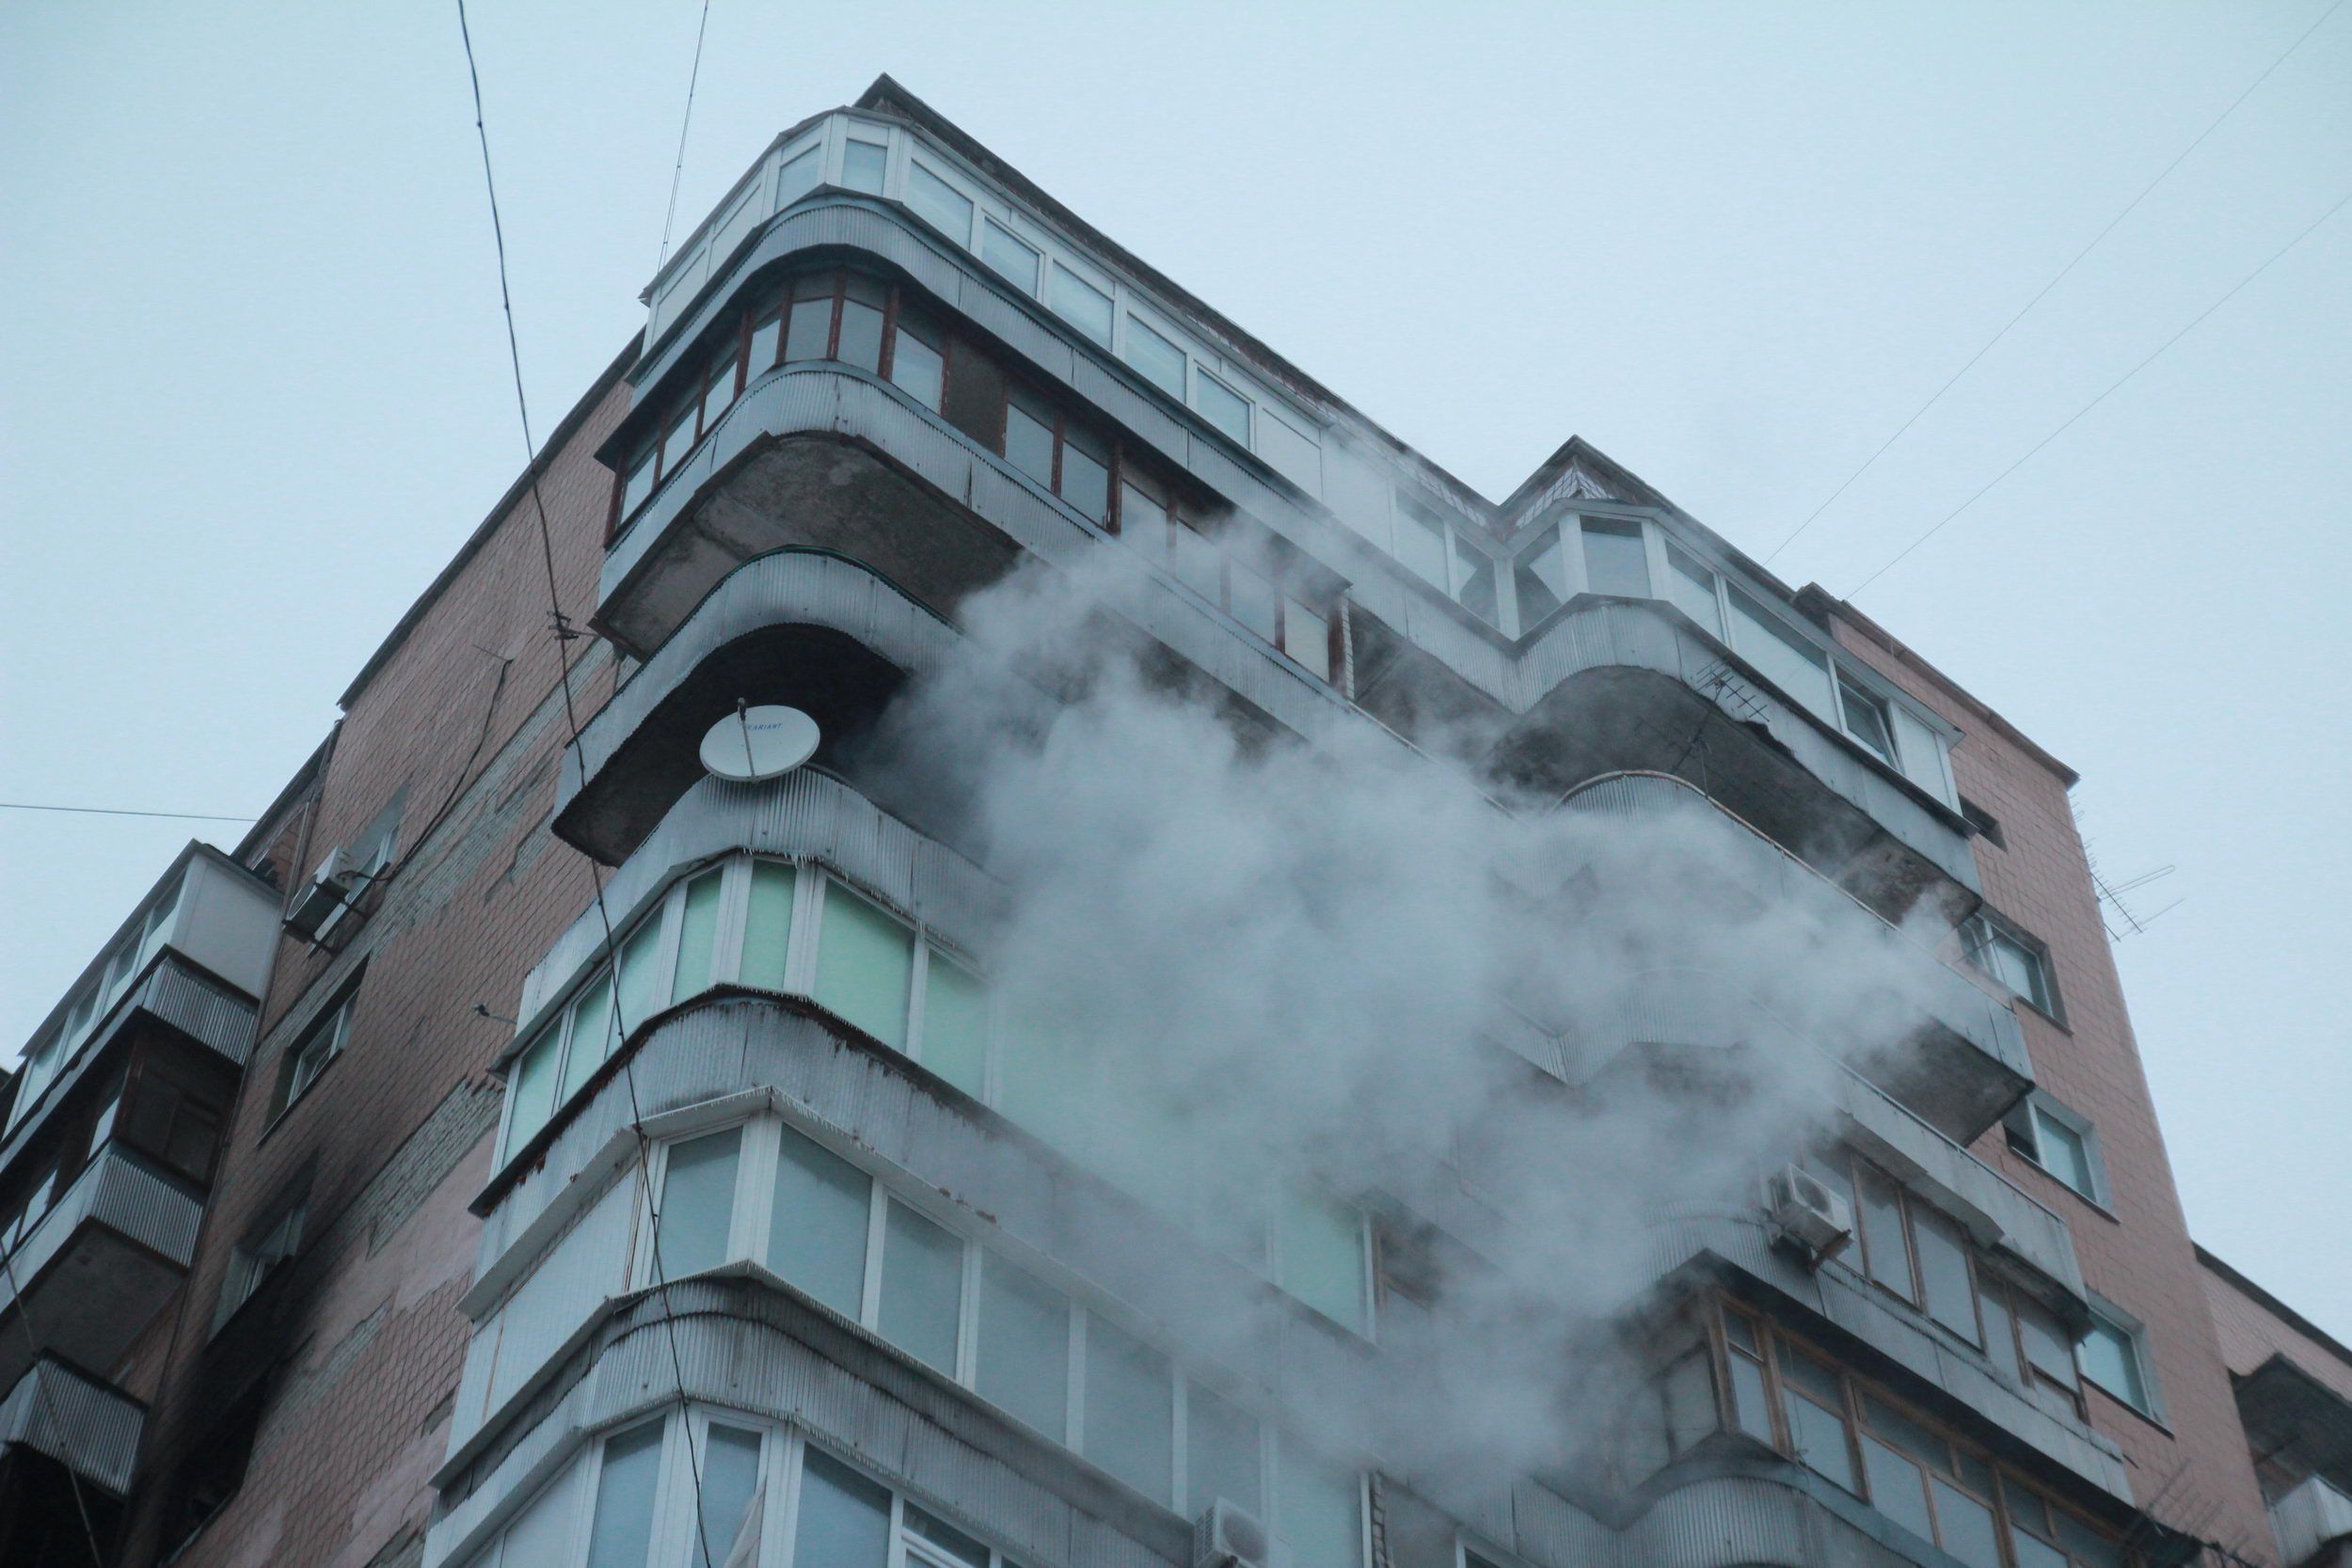 Пожар в Харькове 9 февраля 2021: есть погибшие - фото, видео